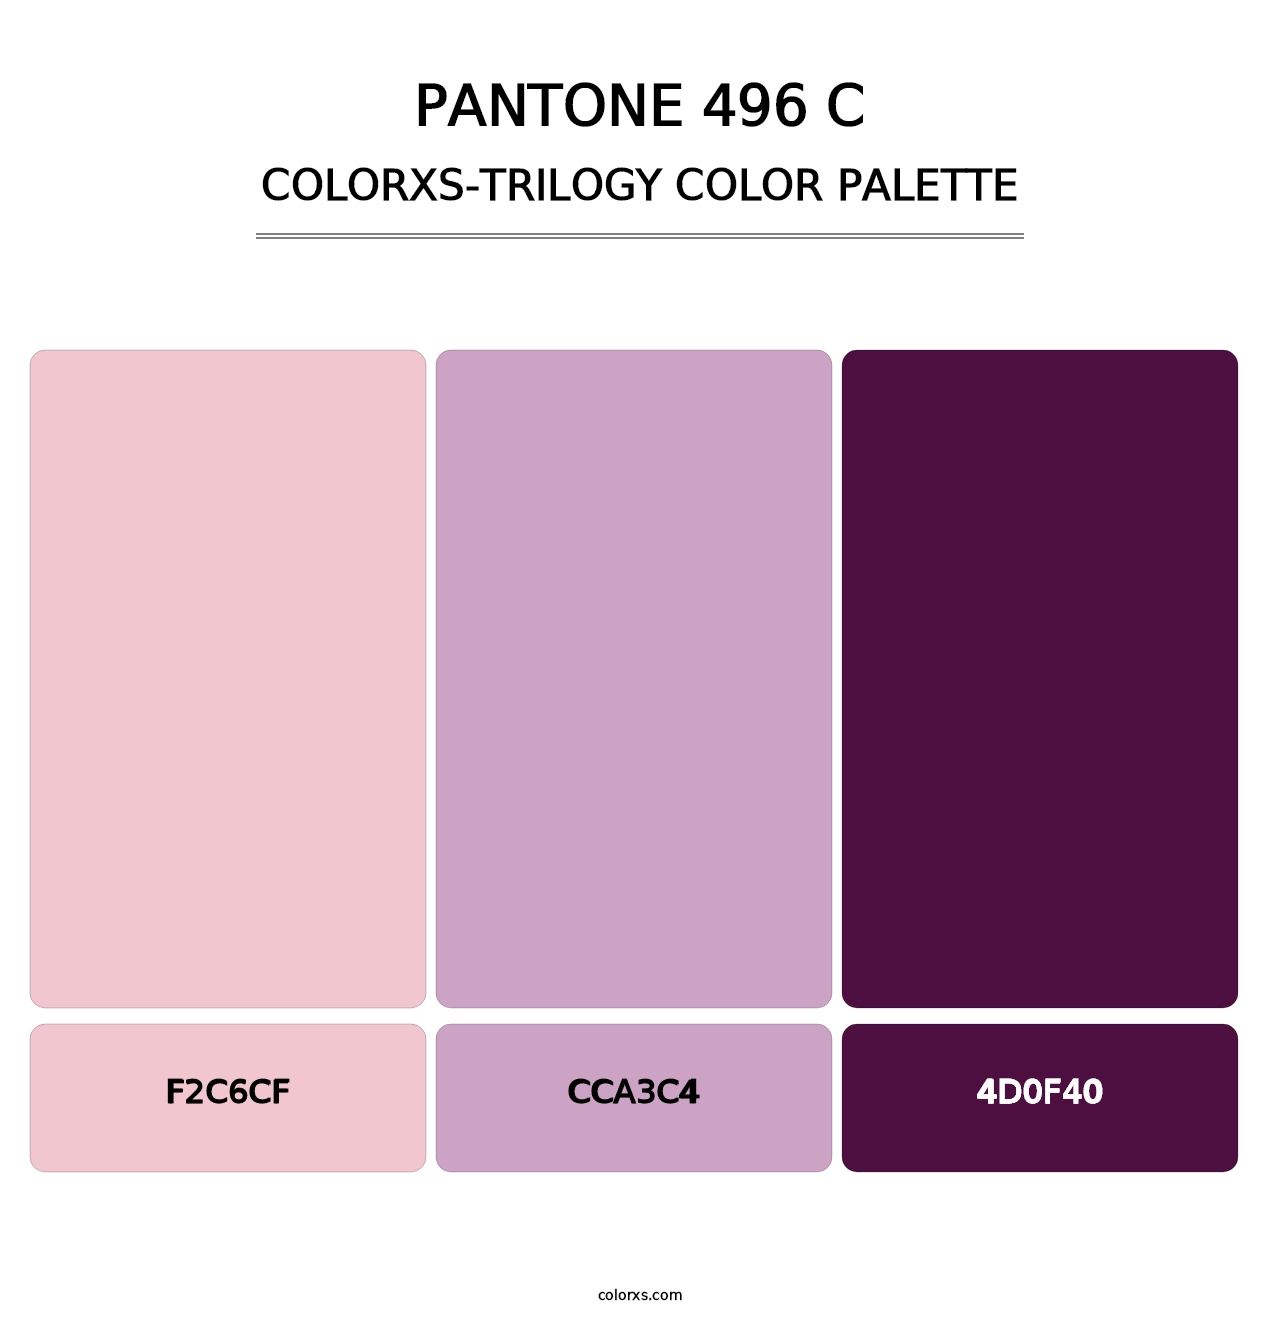 PANTONE 496 C - Colorxs Trilogy Palette